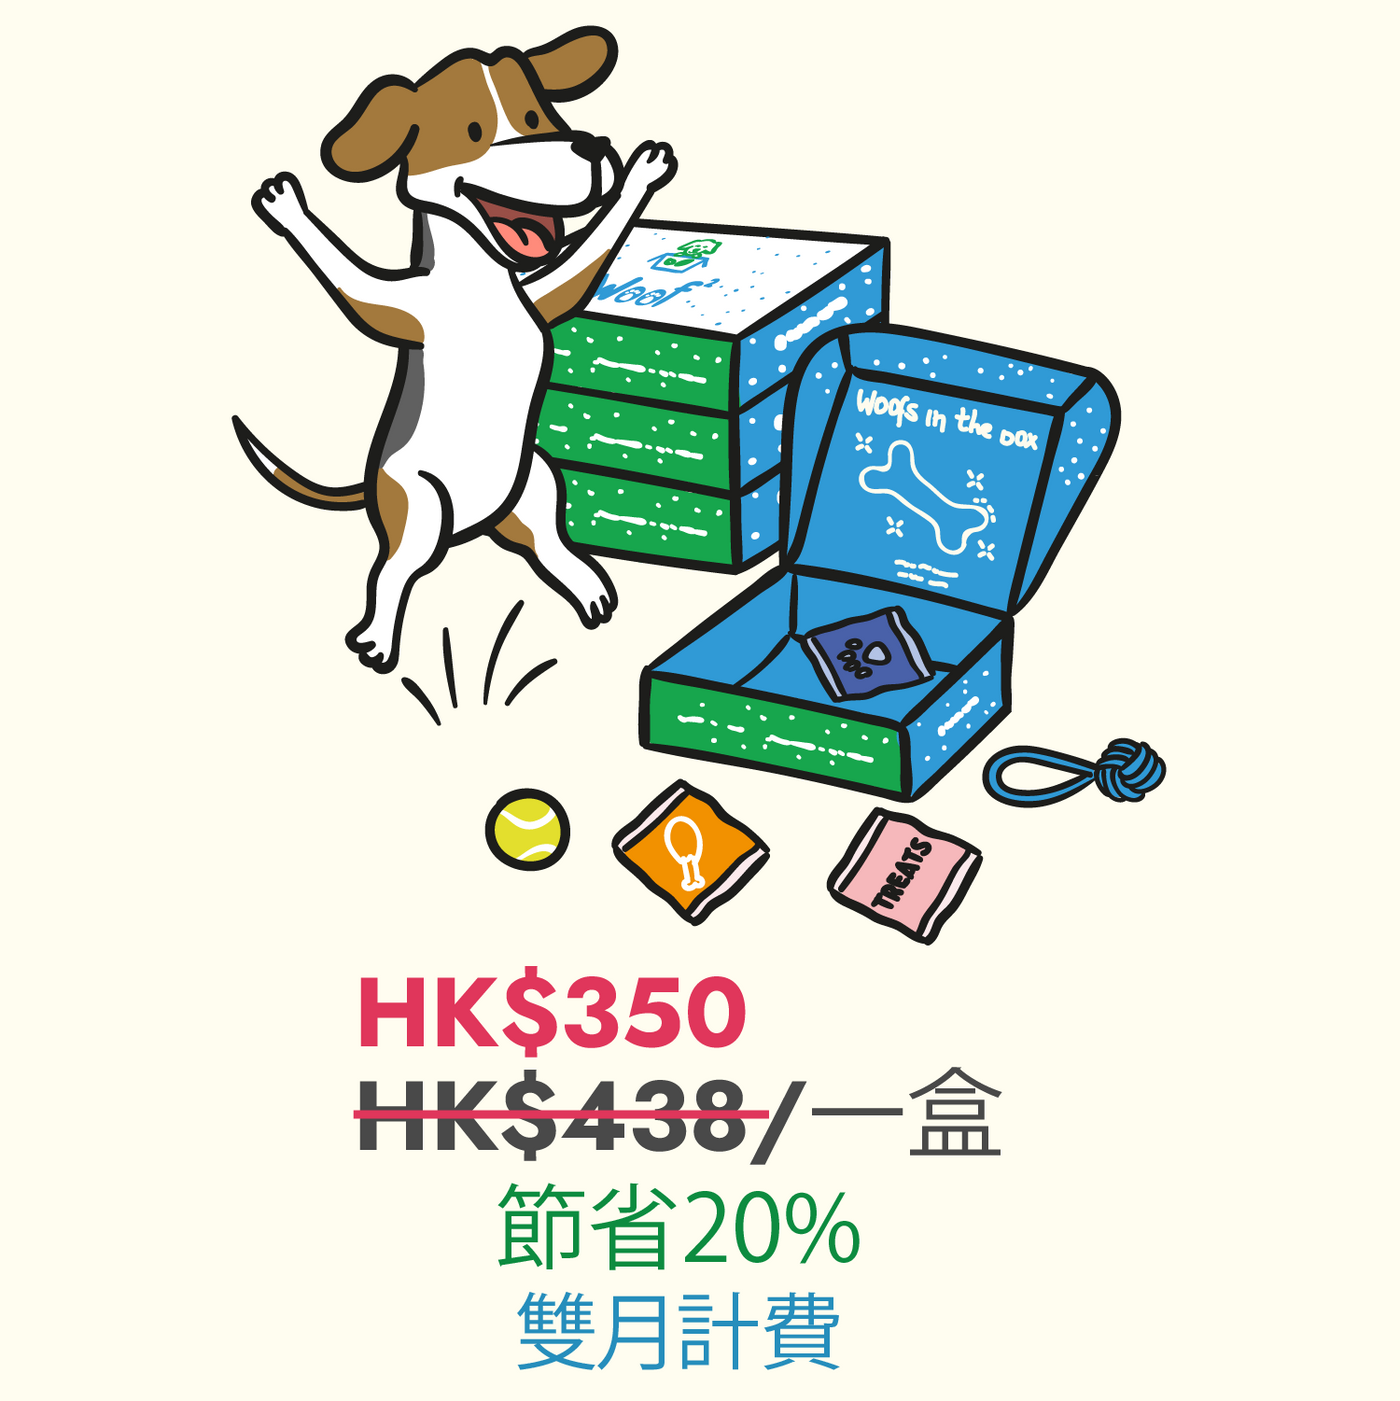 [中文版] Woof² 訂閱十二個月狗狗禮物盒（每兩個月寄出一盒) - Woof² HK